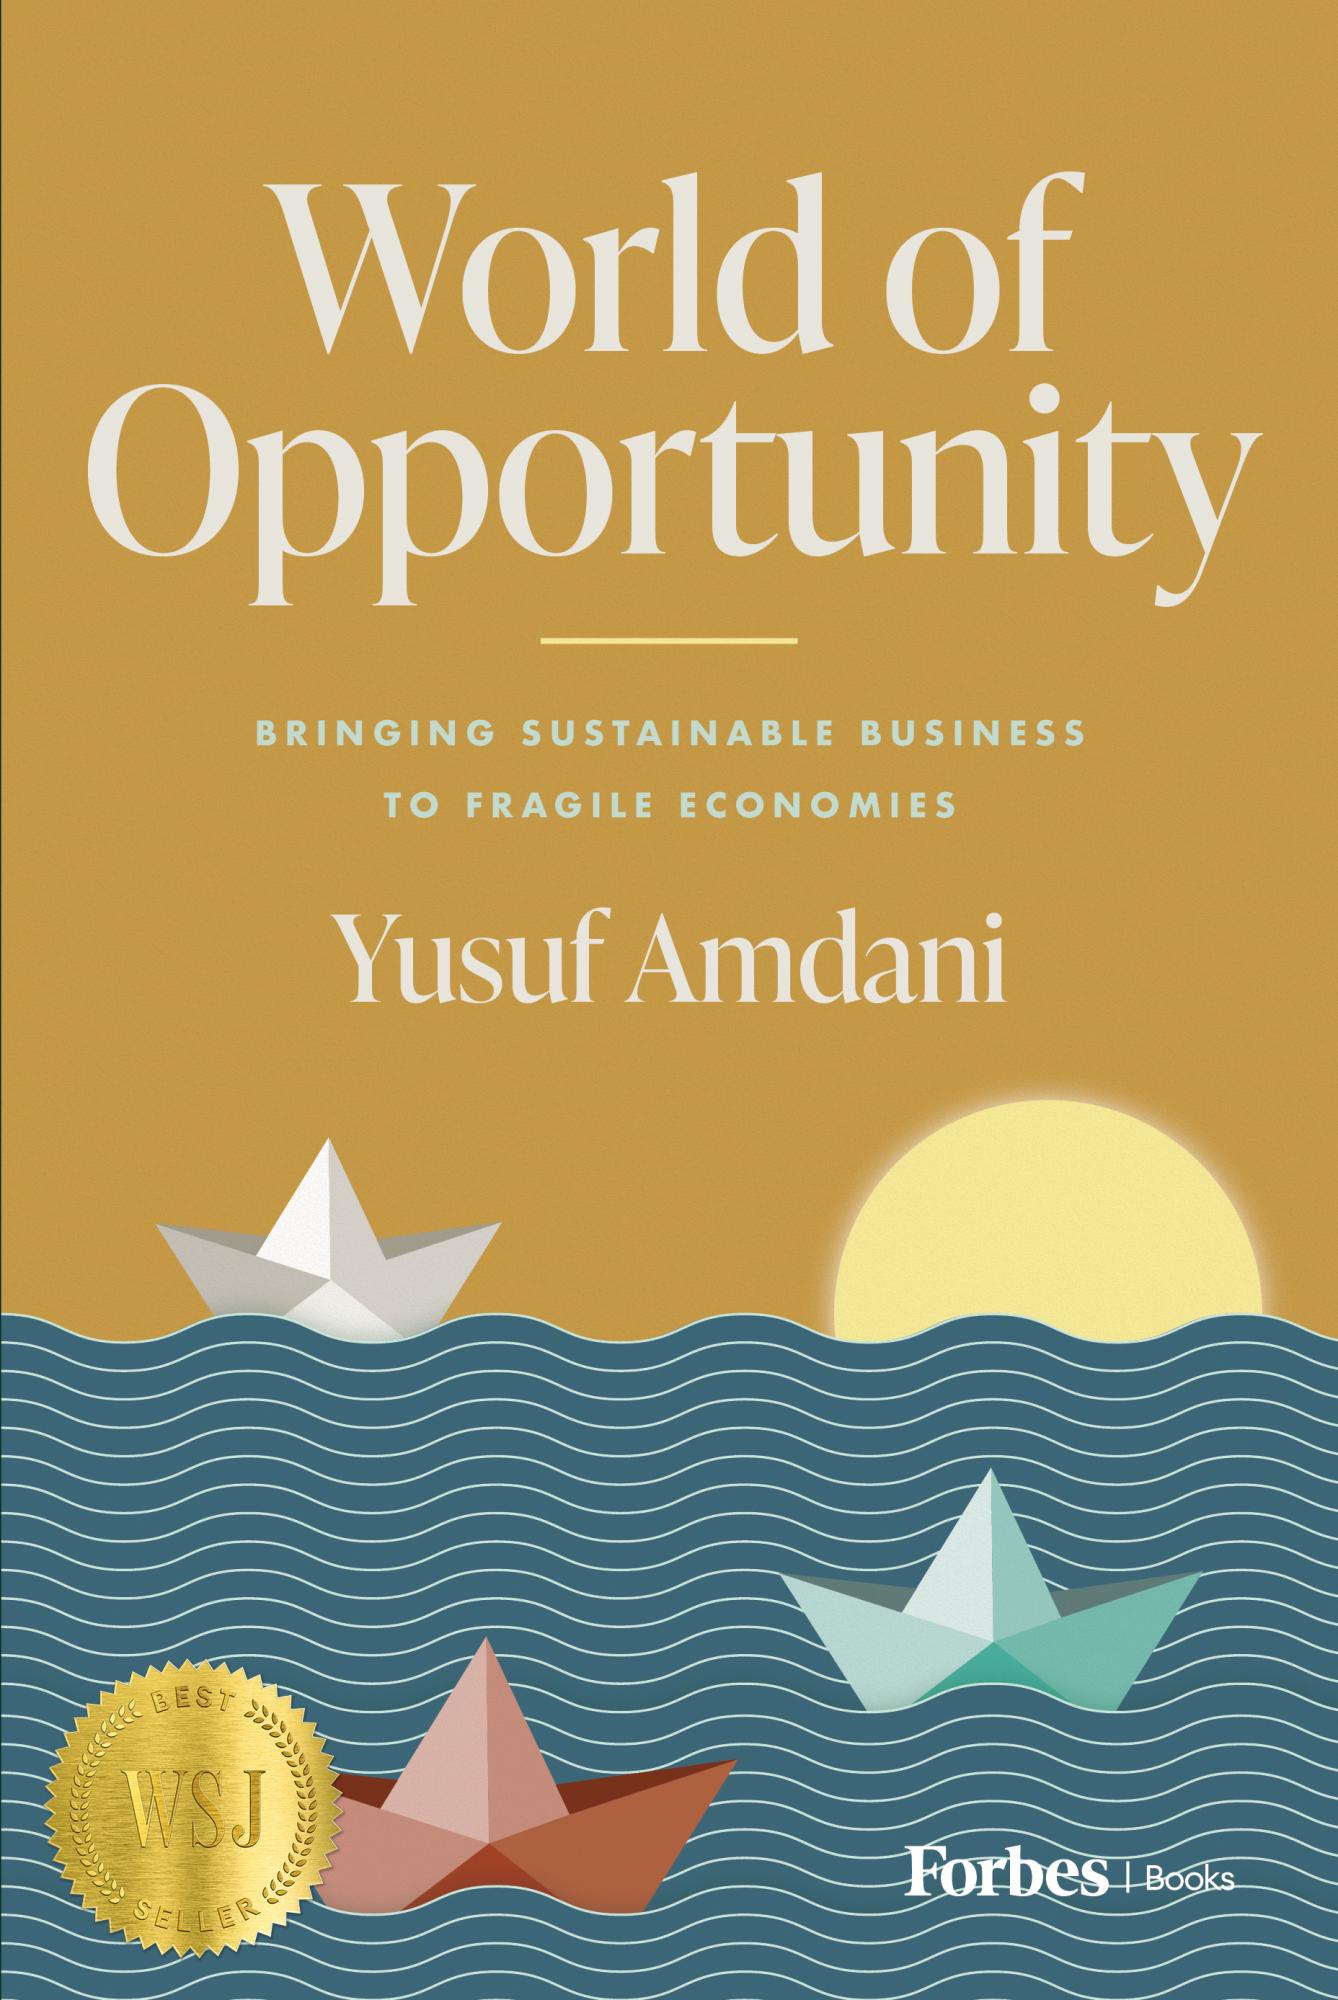 Economía circular y sostenible: Yusuf Amdani destaca la necesidad de invertir en economías frágiles y crear oportunidades